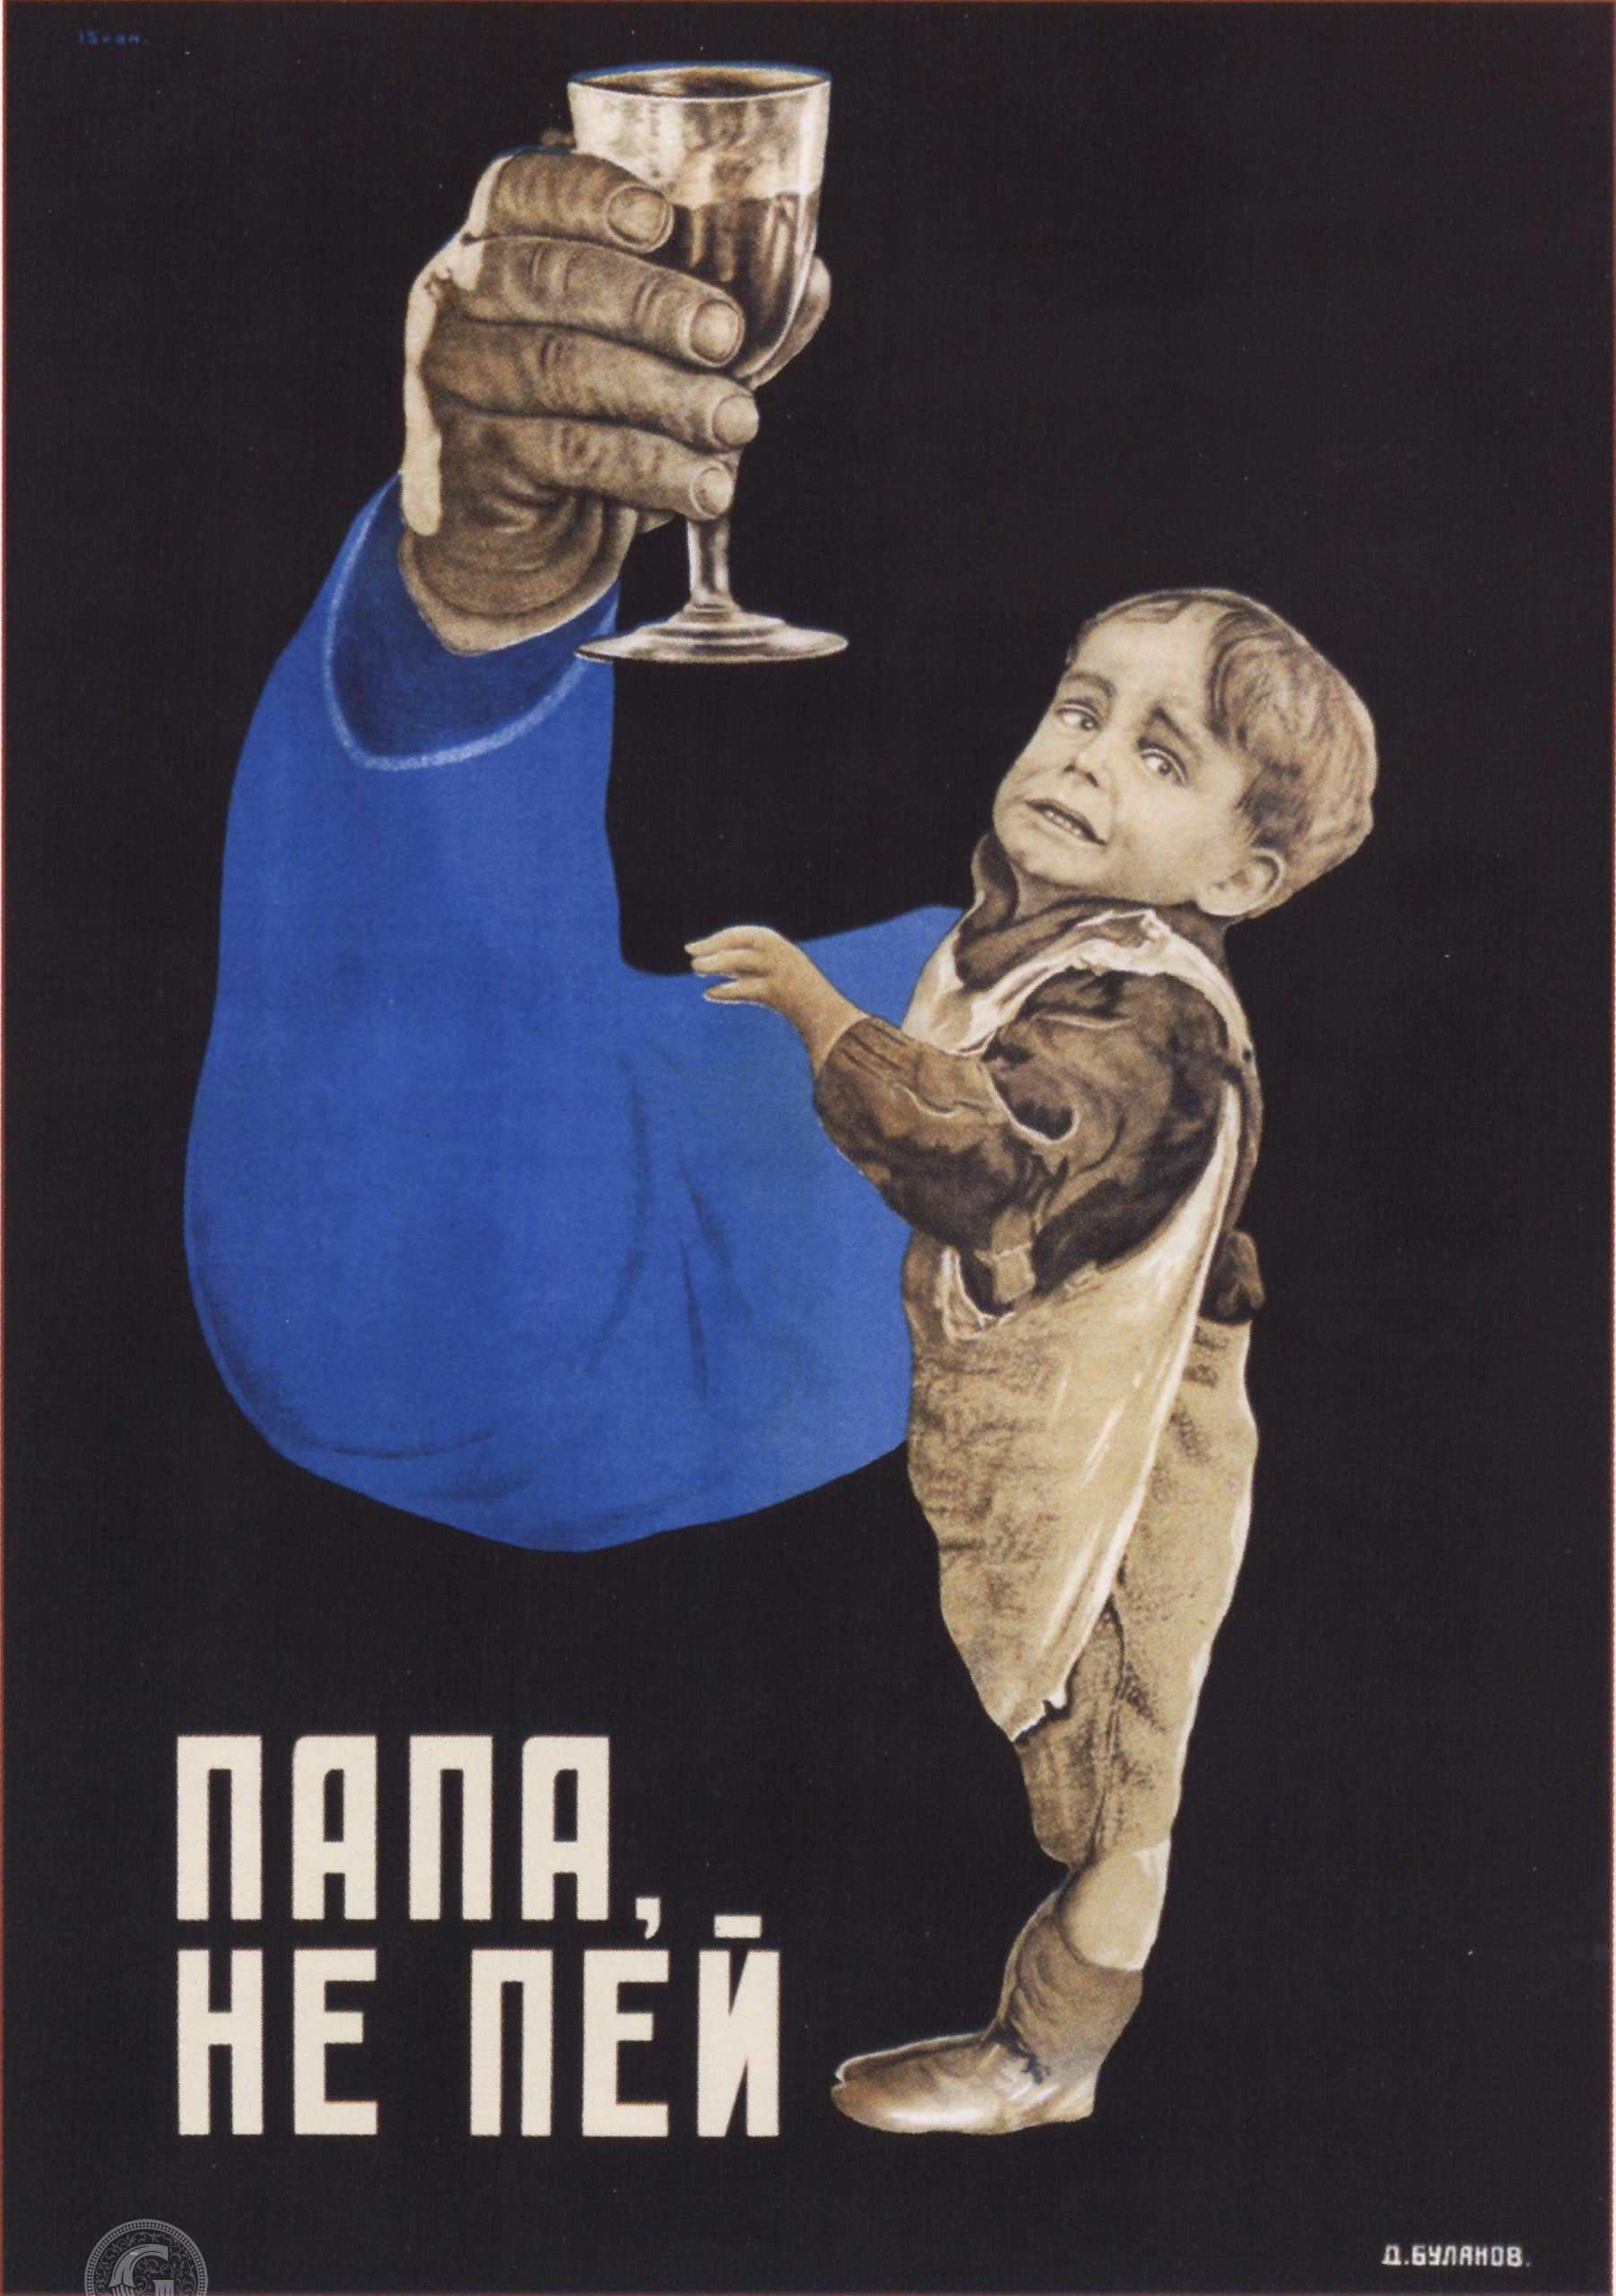 “Papà, non bere”, poster sovietico contro il consumo di alcolici